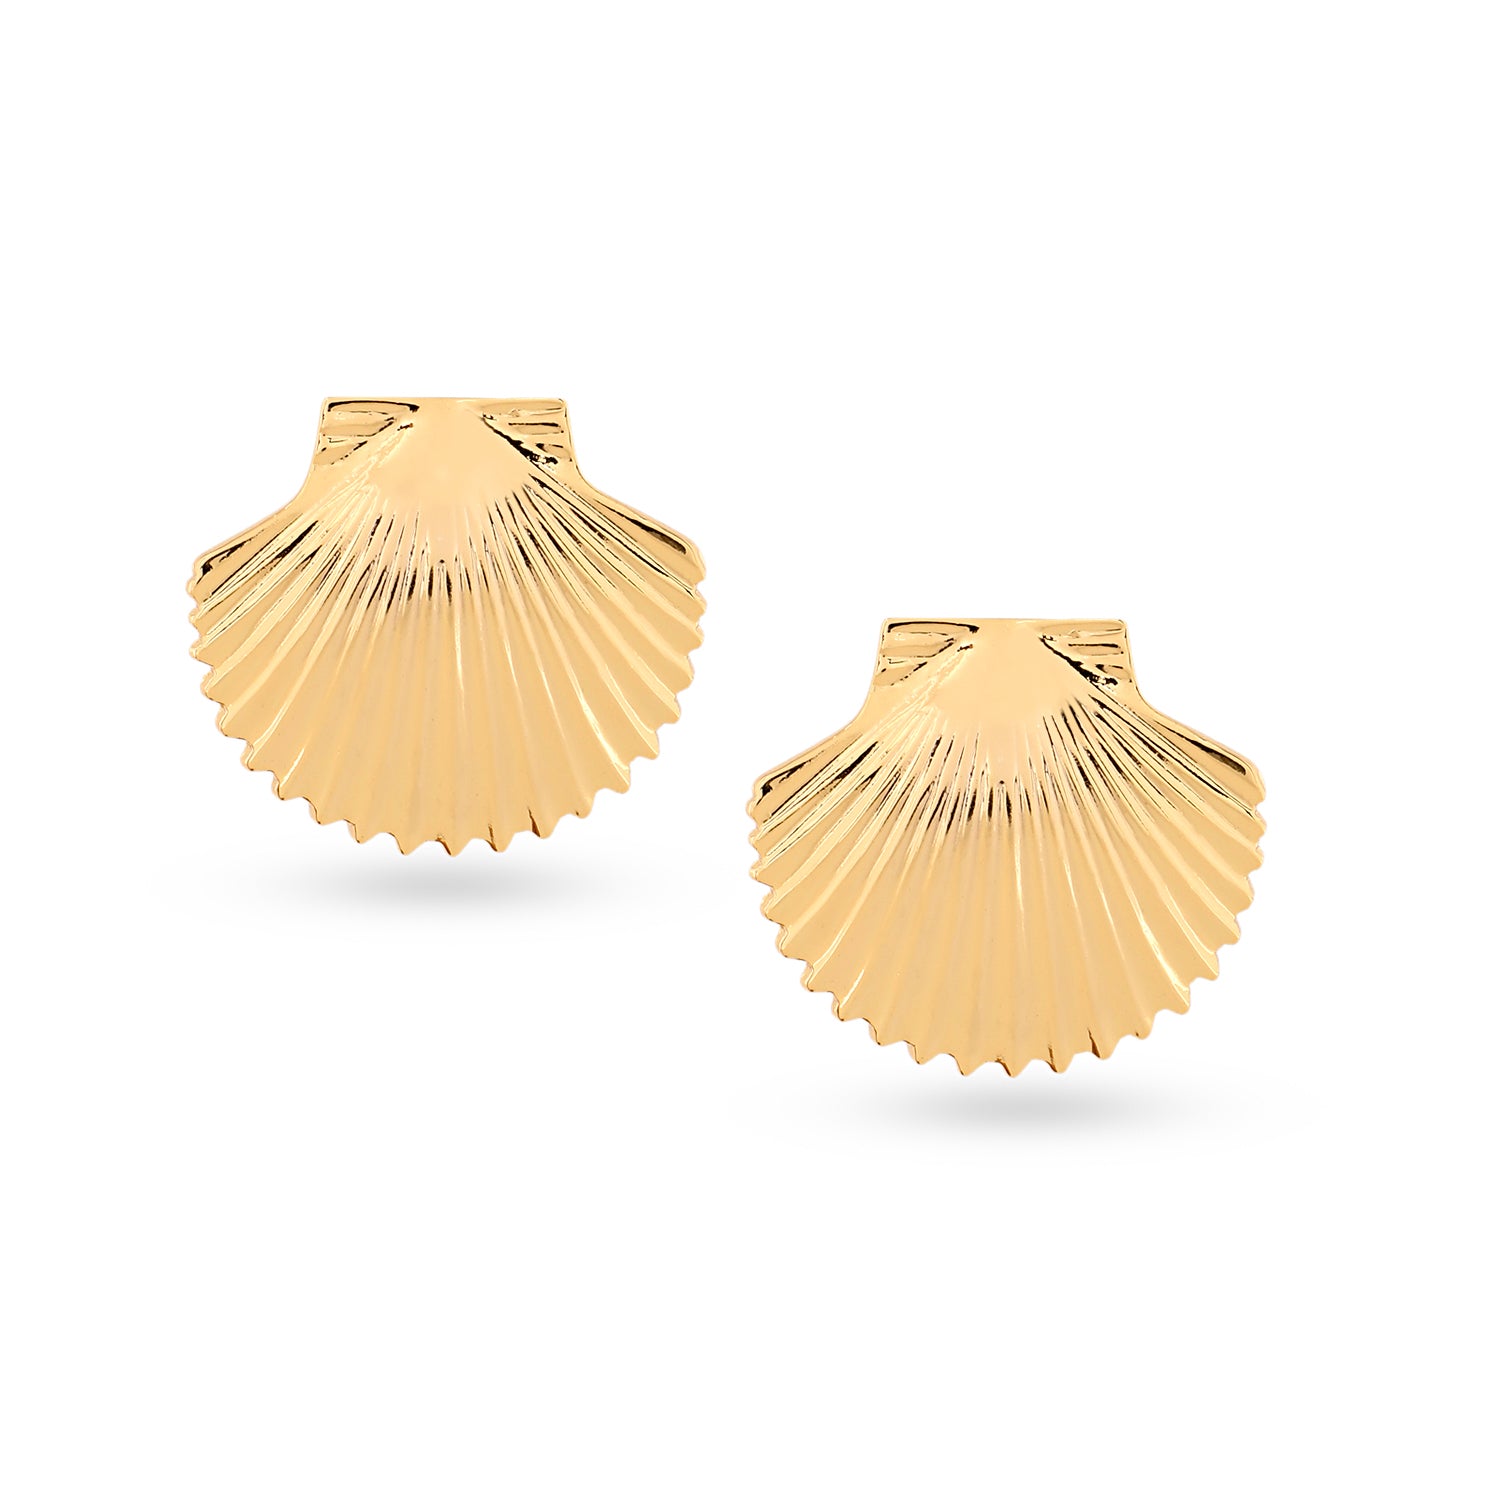 Shell Top earrings